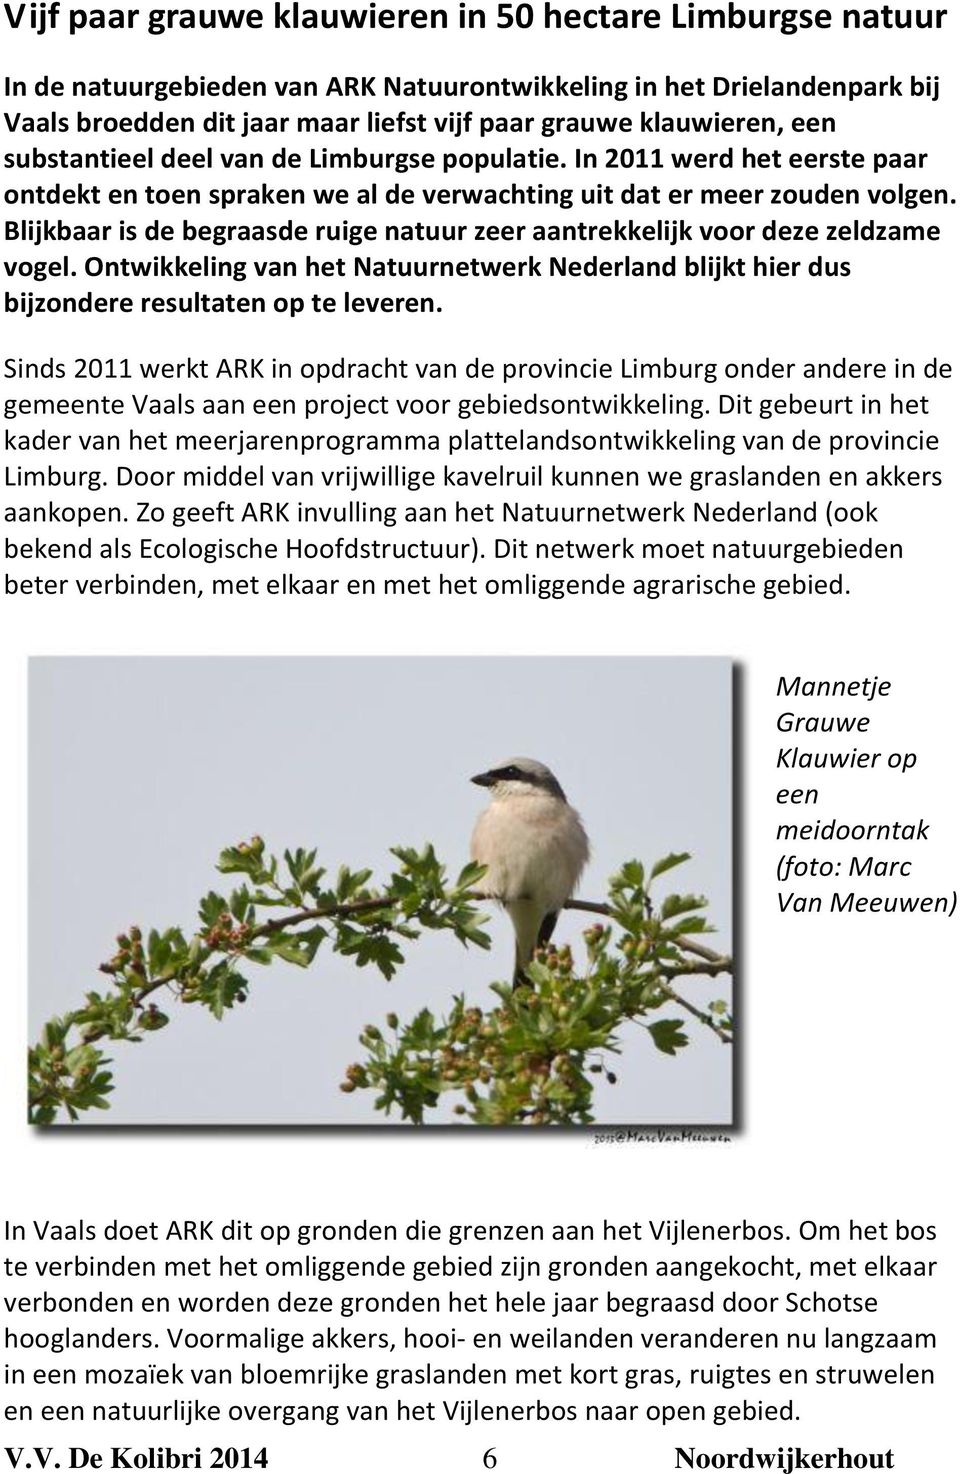 Blijkbaar is de begraasde ruige natuur zeer aantrekkelijk voor deze zeldzame vogel. Ontwikkeling van het Natuurnetwerk Nederland blijkt hier dus bijzondere resultaten op te leveren.